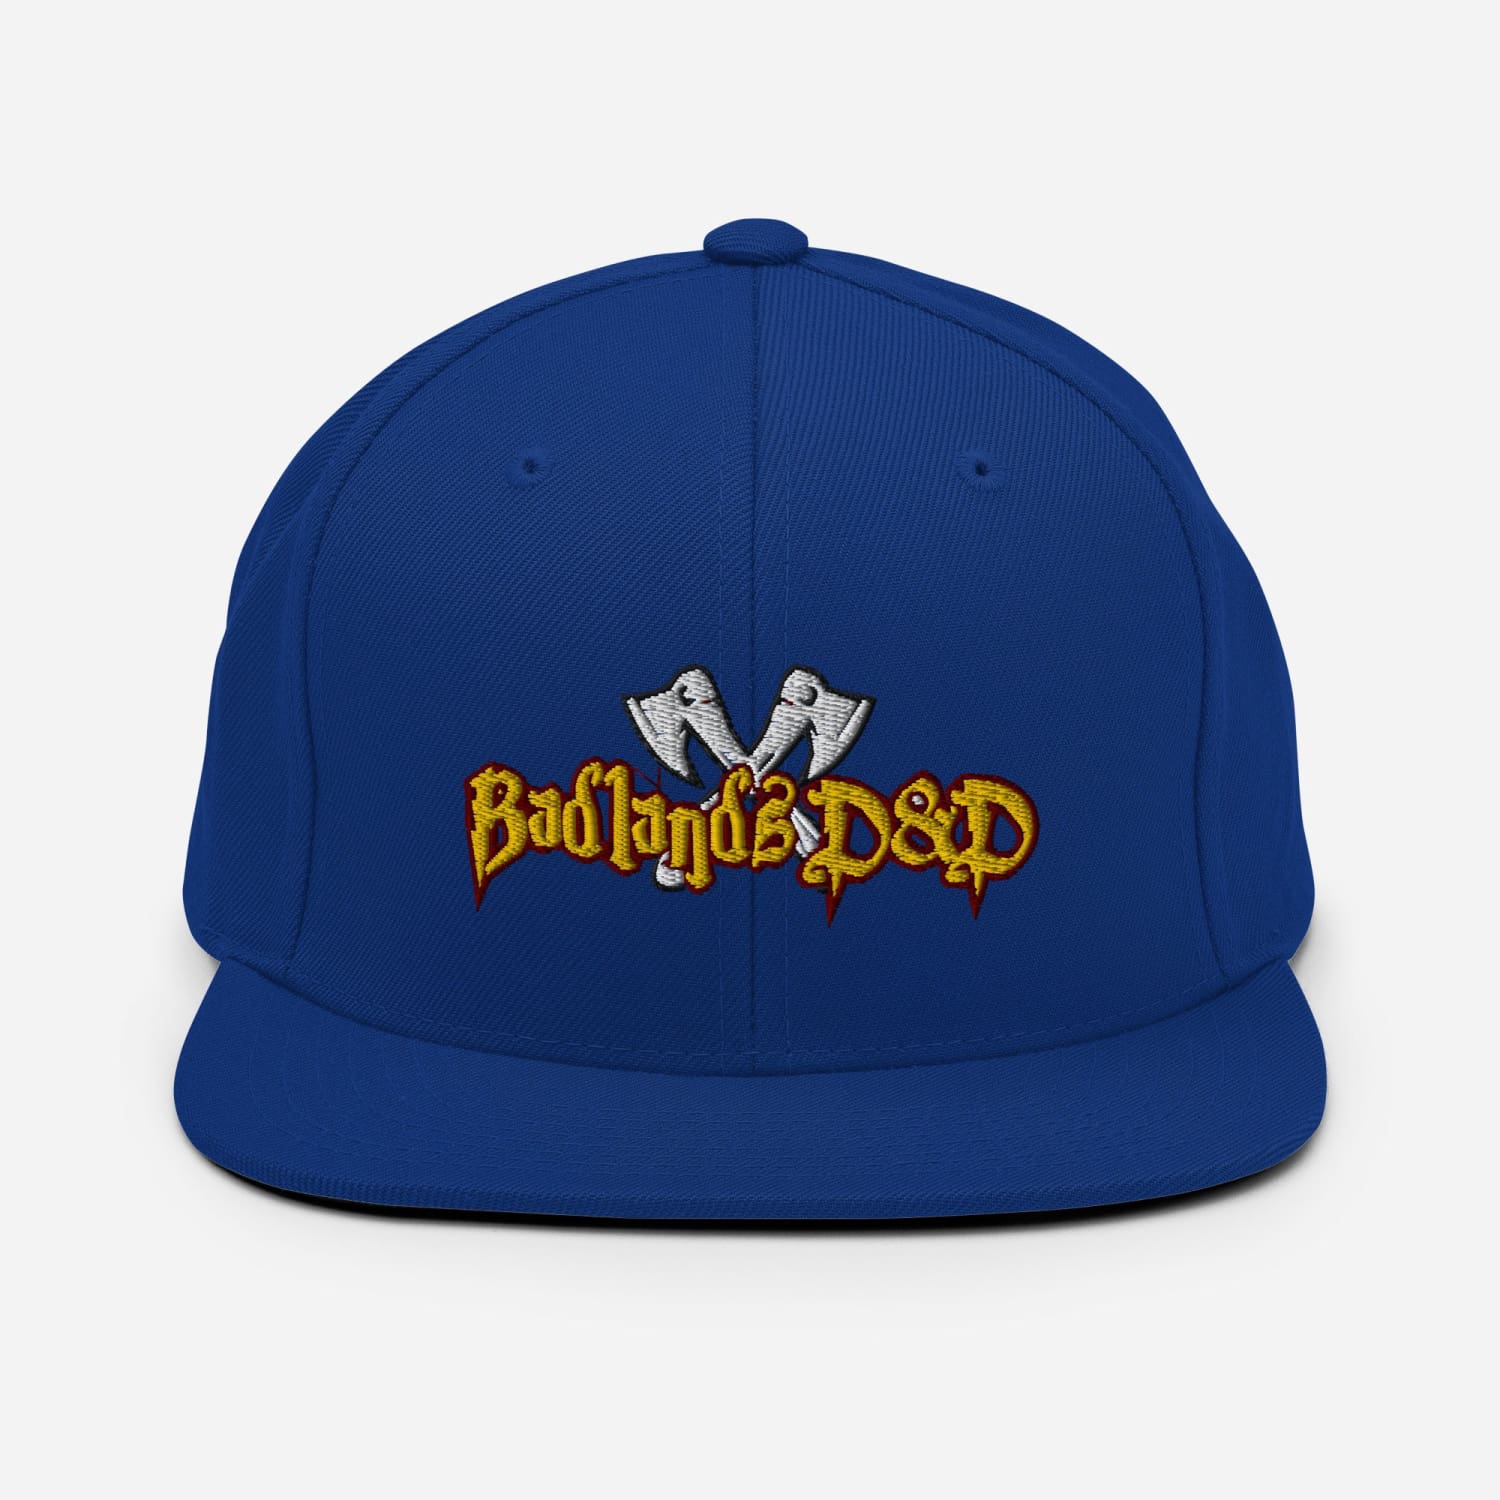 Badlands D&D Logo Classic Snapback Cap - Royal Blue